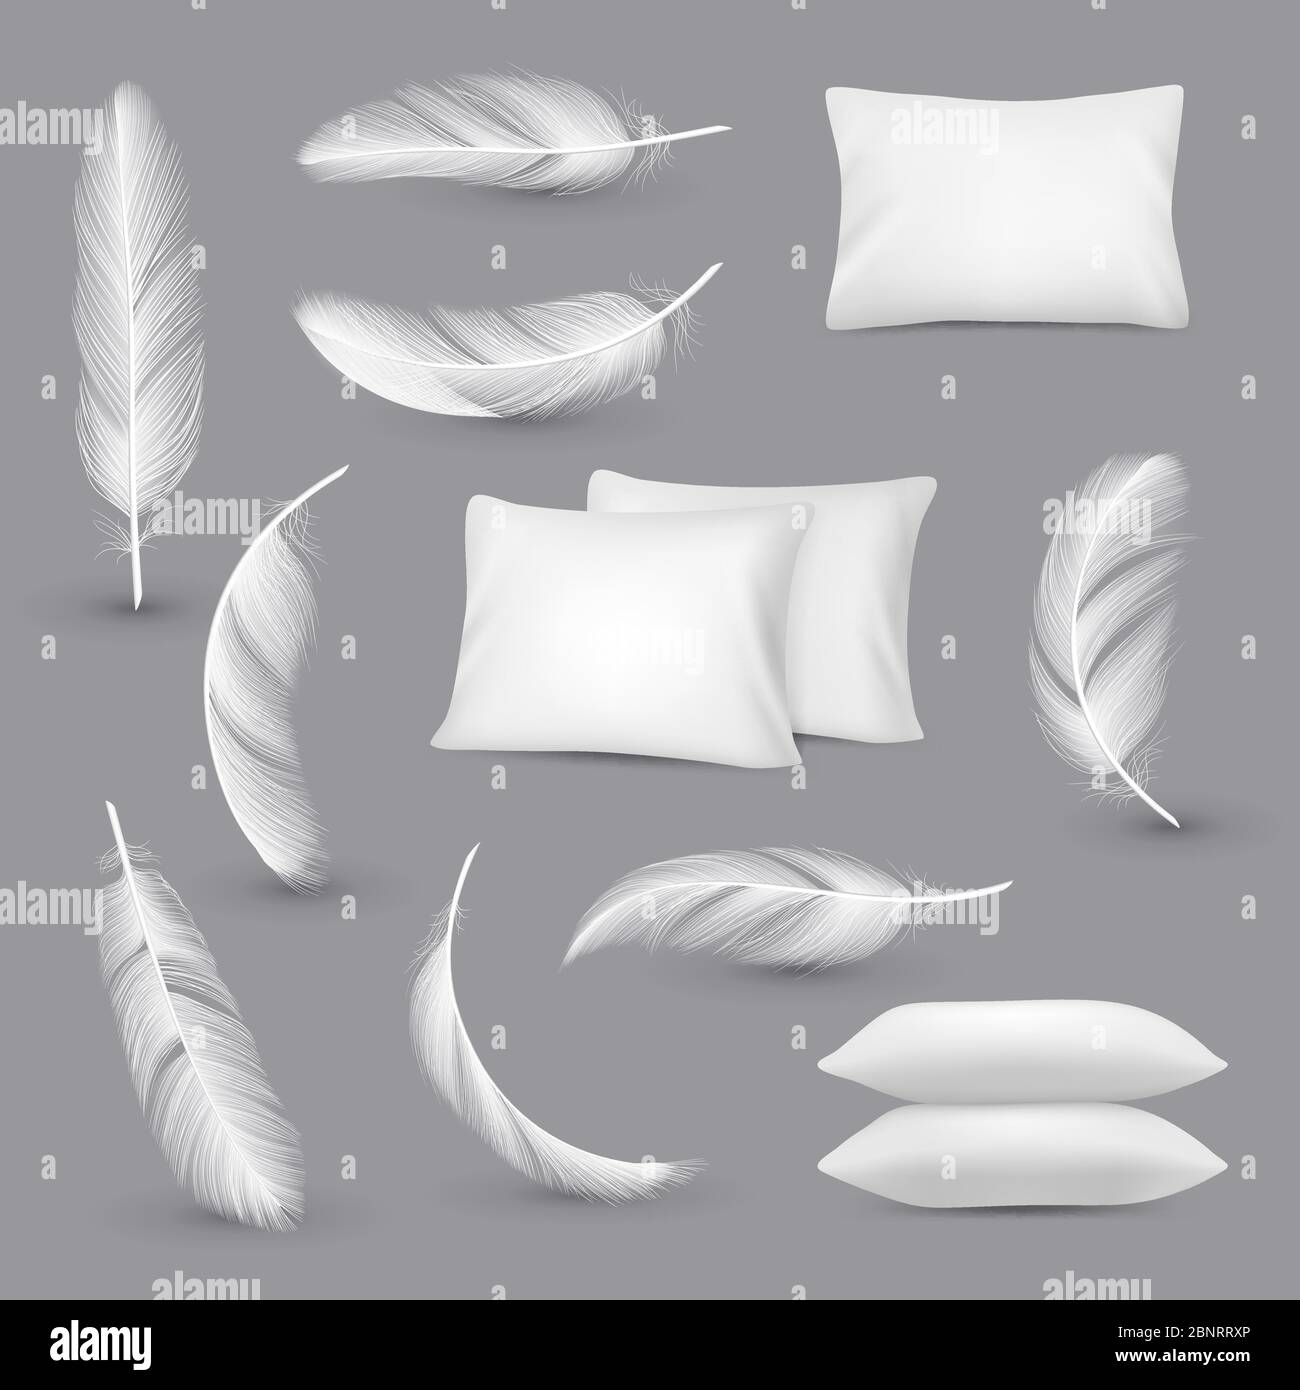 Cuscini bianchi. Piume del vento per i cuscini rettangolari della camera da letto vettore immagini realistiche isolate Illustrazione Vettoriale